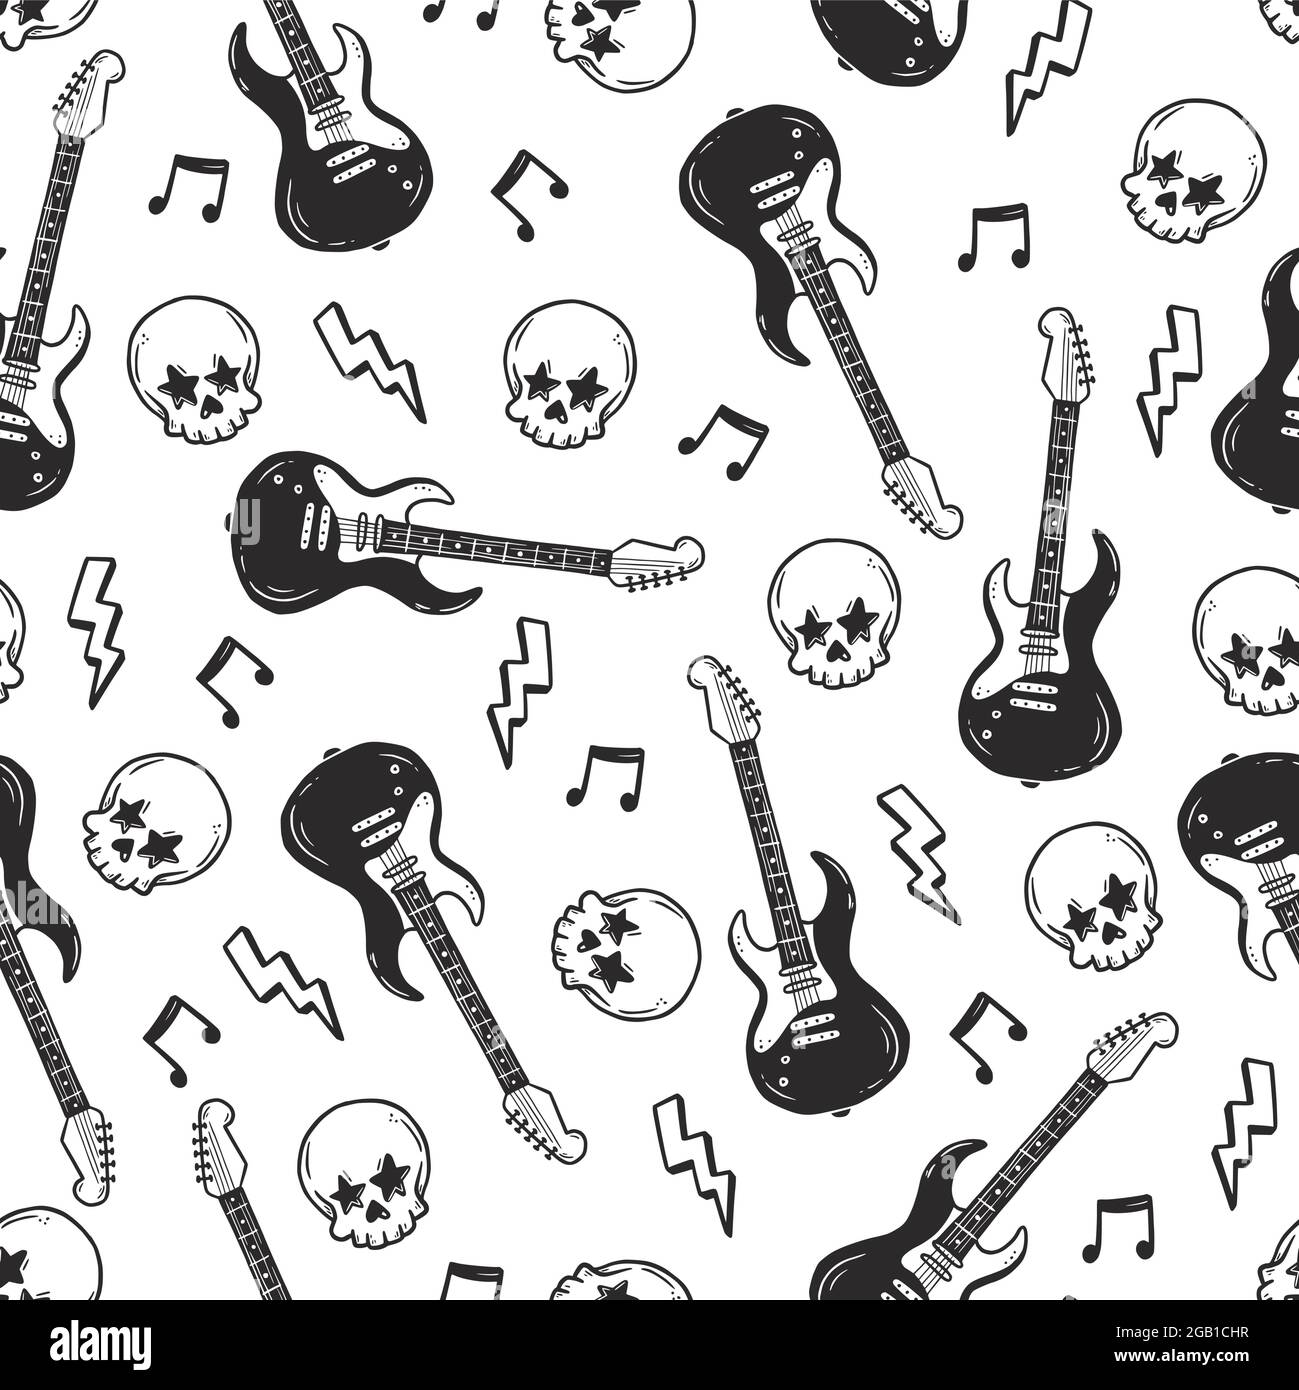 Immagini Stock - Poster Vintage Rock N Roll Disegnato A Mano, Poster Di  Musica Rock. Design Grafico Per T-shirt Con Musica Hard. Maglietta Di  Musica Rock. Citazione Di Power Of Rock N